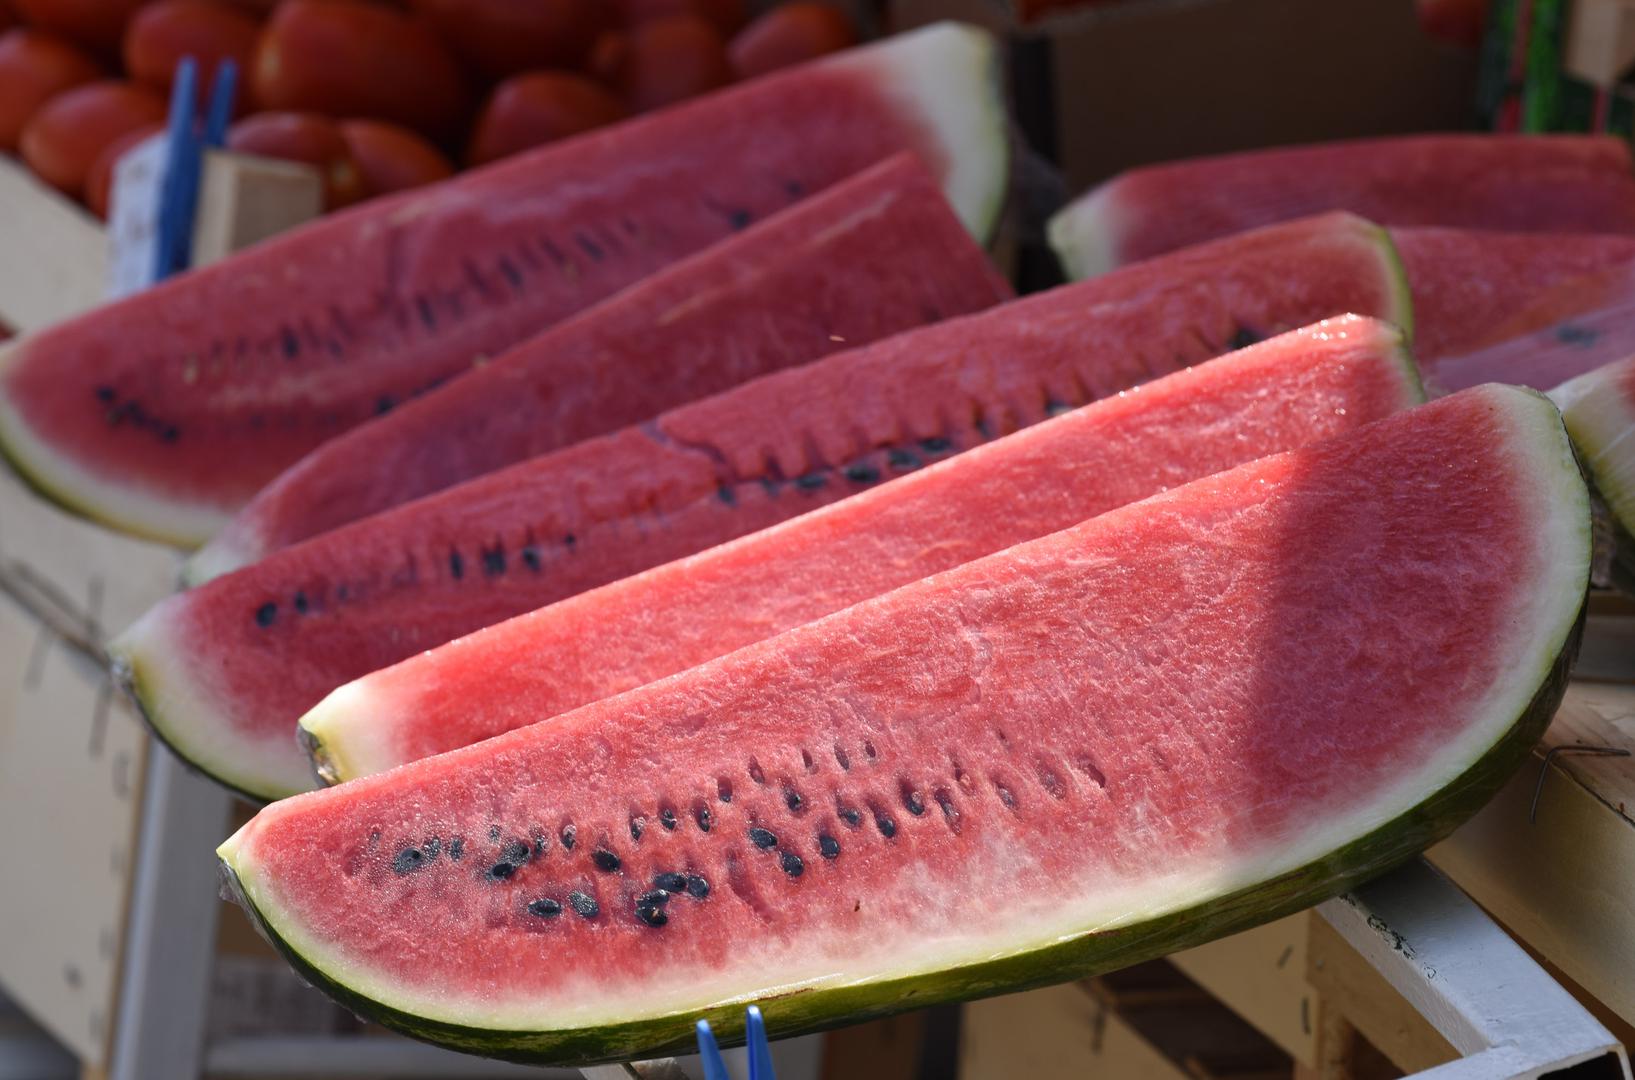 Visok udio vode i samo 30 kcal na 100 g, lubenicu čini idealnim desertom u vruće ljetne dane